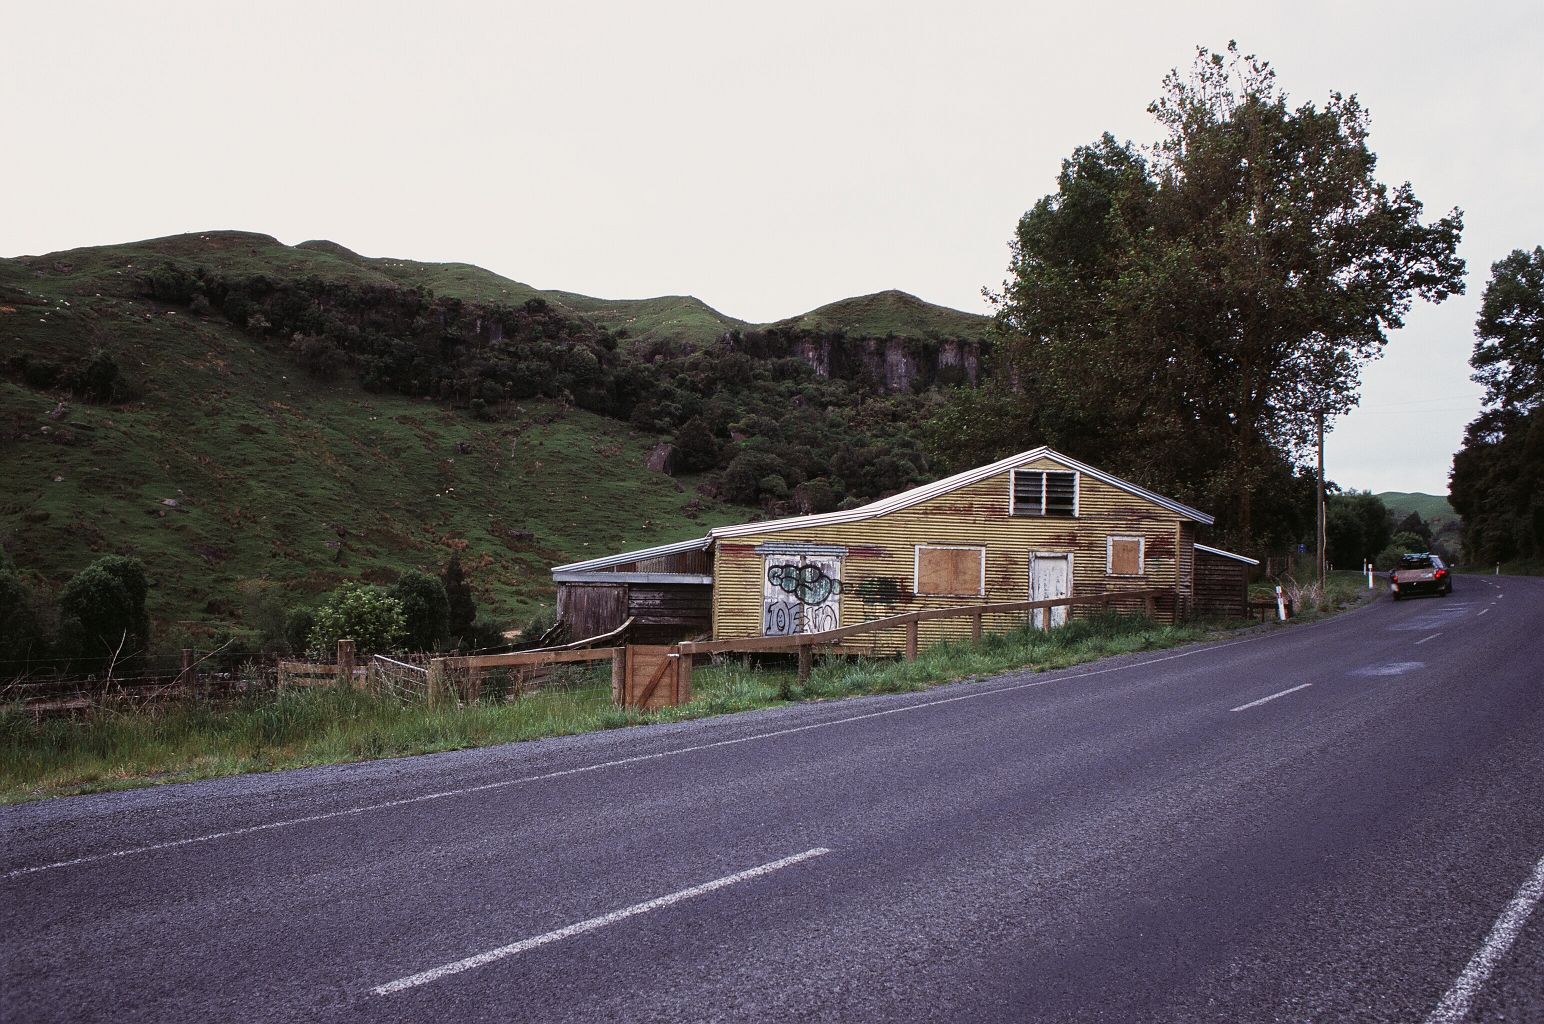 fotka / image gorge, z Aucklandu do Wellingtonu